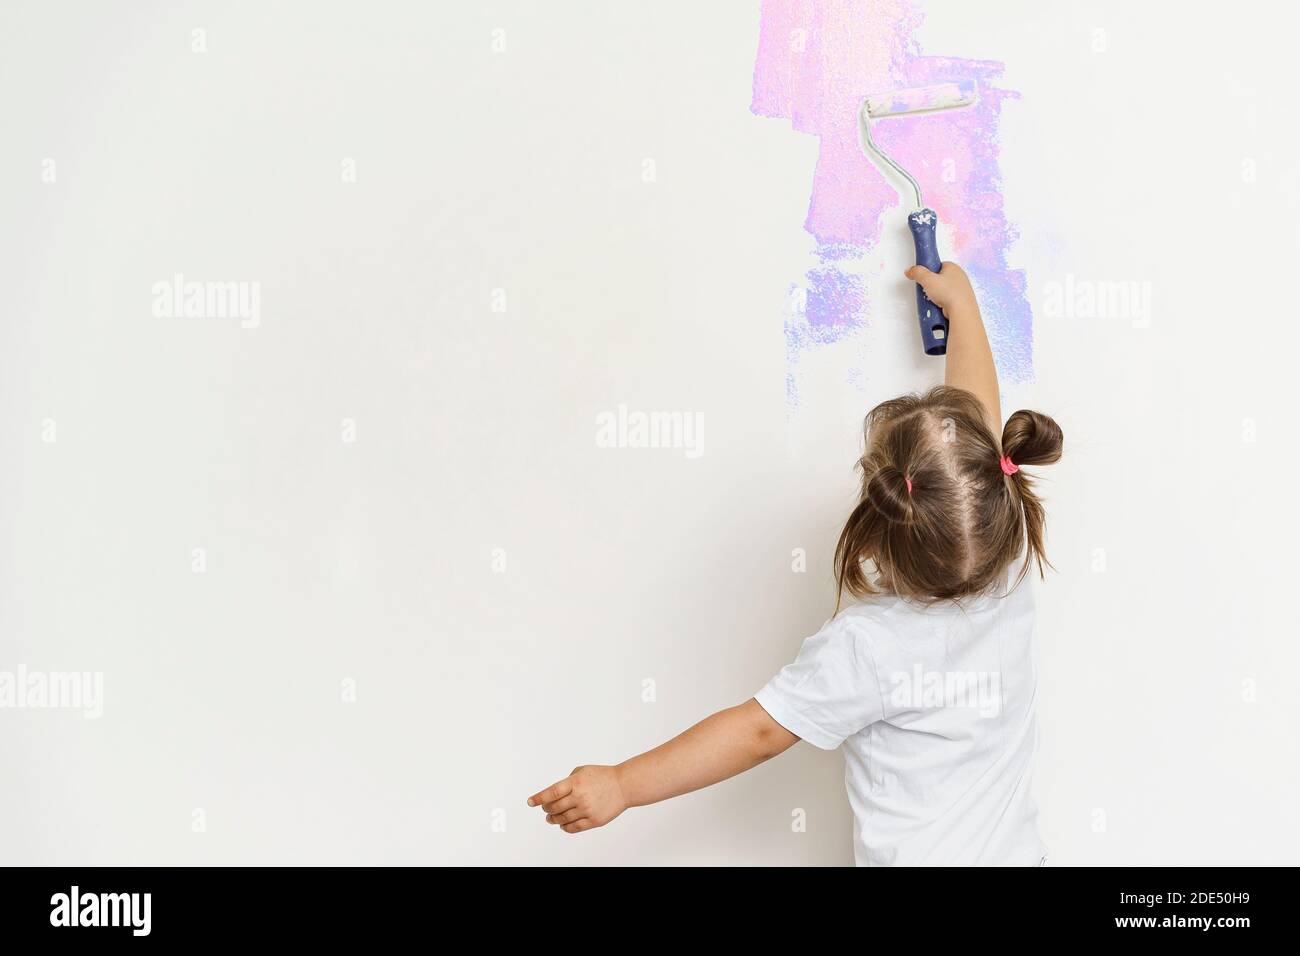 jolie petite fille peint le mur gris avec une construction rouleau aux couleurs vives Banque D'Images